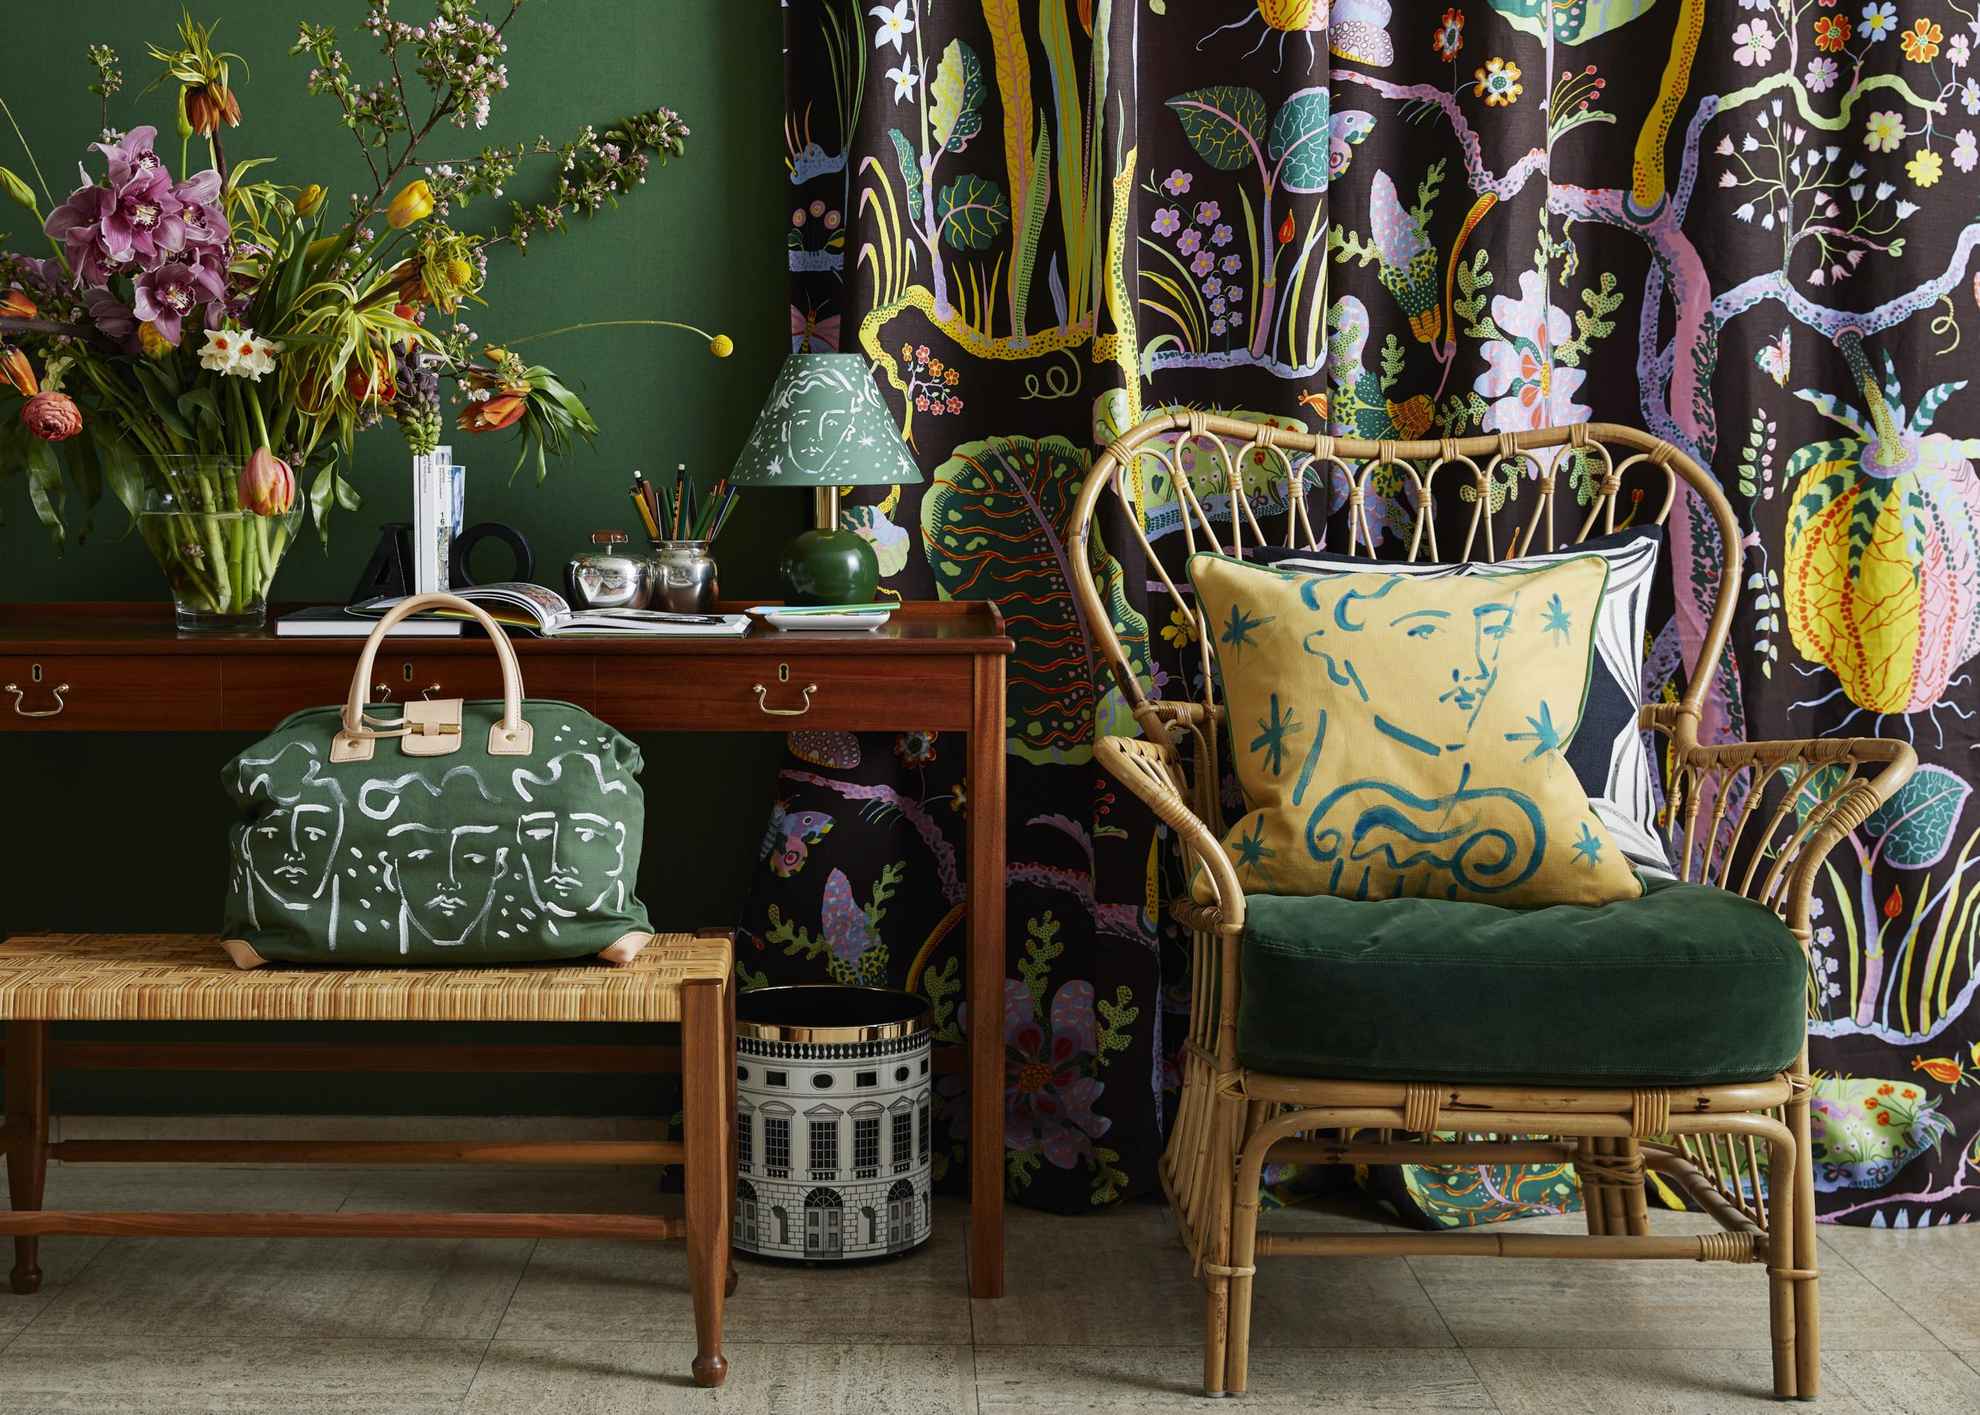 Il y a des fleurs disposés dans un vase et une lampe posée sur une table à côté d'une chaise avec un coussin. Il y a un sac sur un tabouret devant la table. Derrière la chaise, il y a un rideau à motifs colorés.